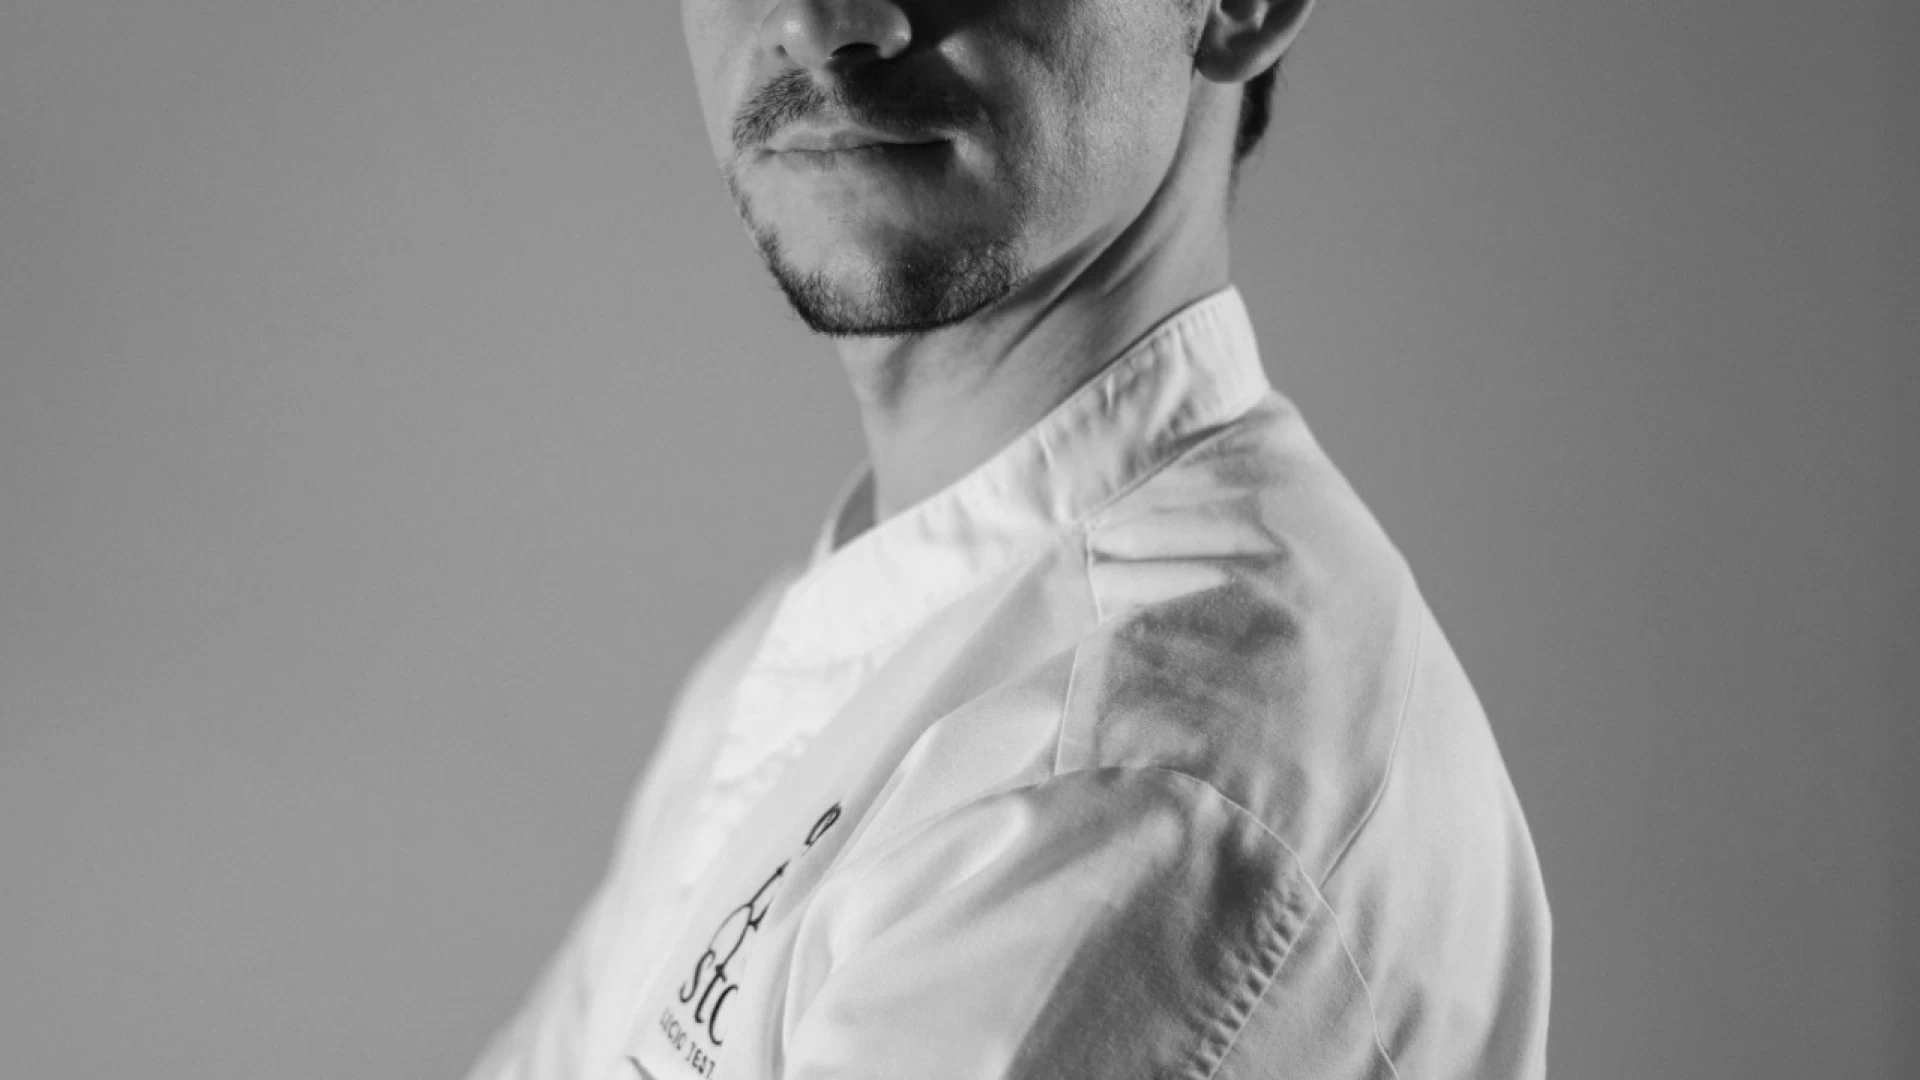 Chef Lucio testa vola in Brasile per rappresentare il Molise nella Settimana della Cucina Italiana.